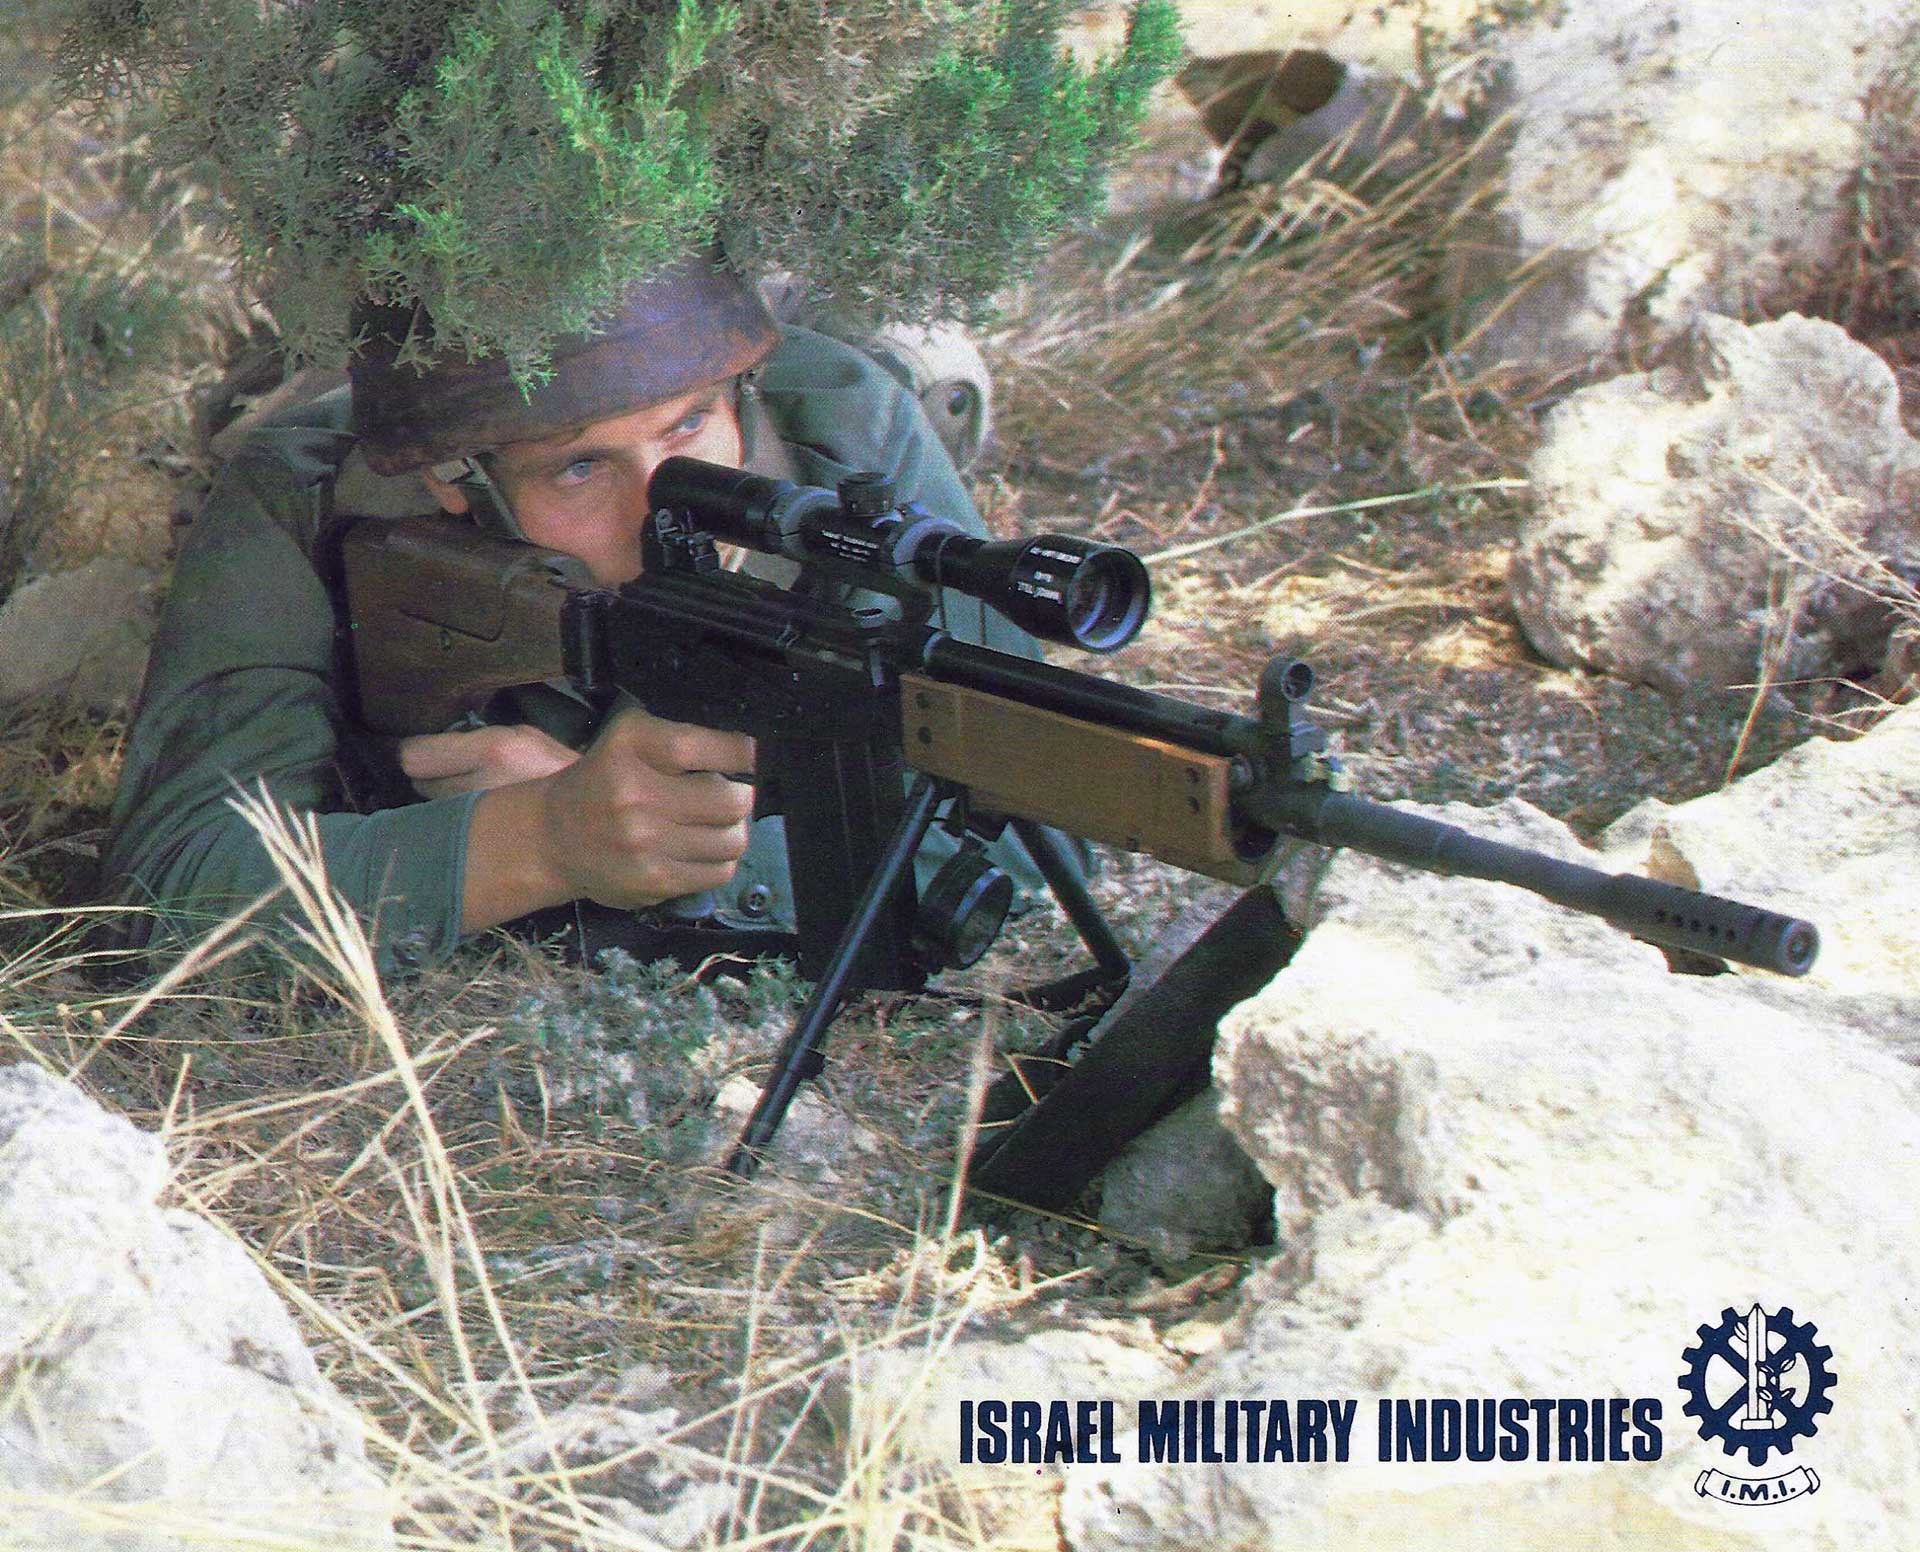 A man aims a Galil sniper rifle while hiding underneath brush.